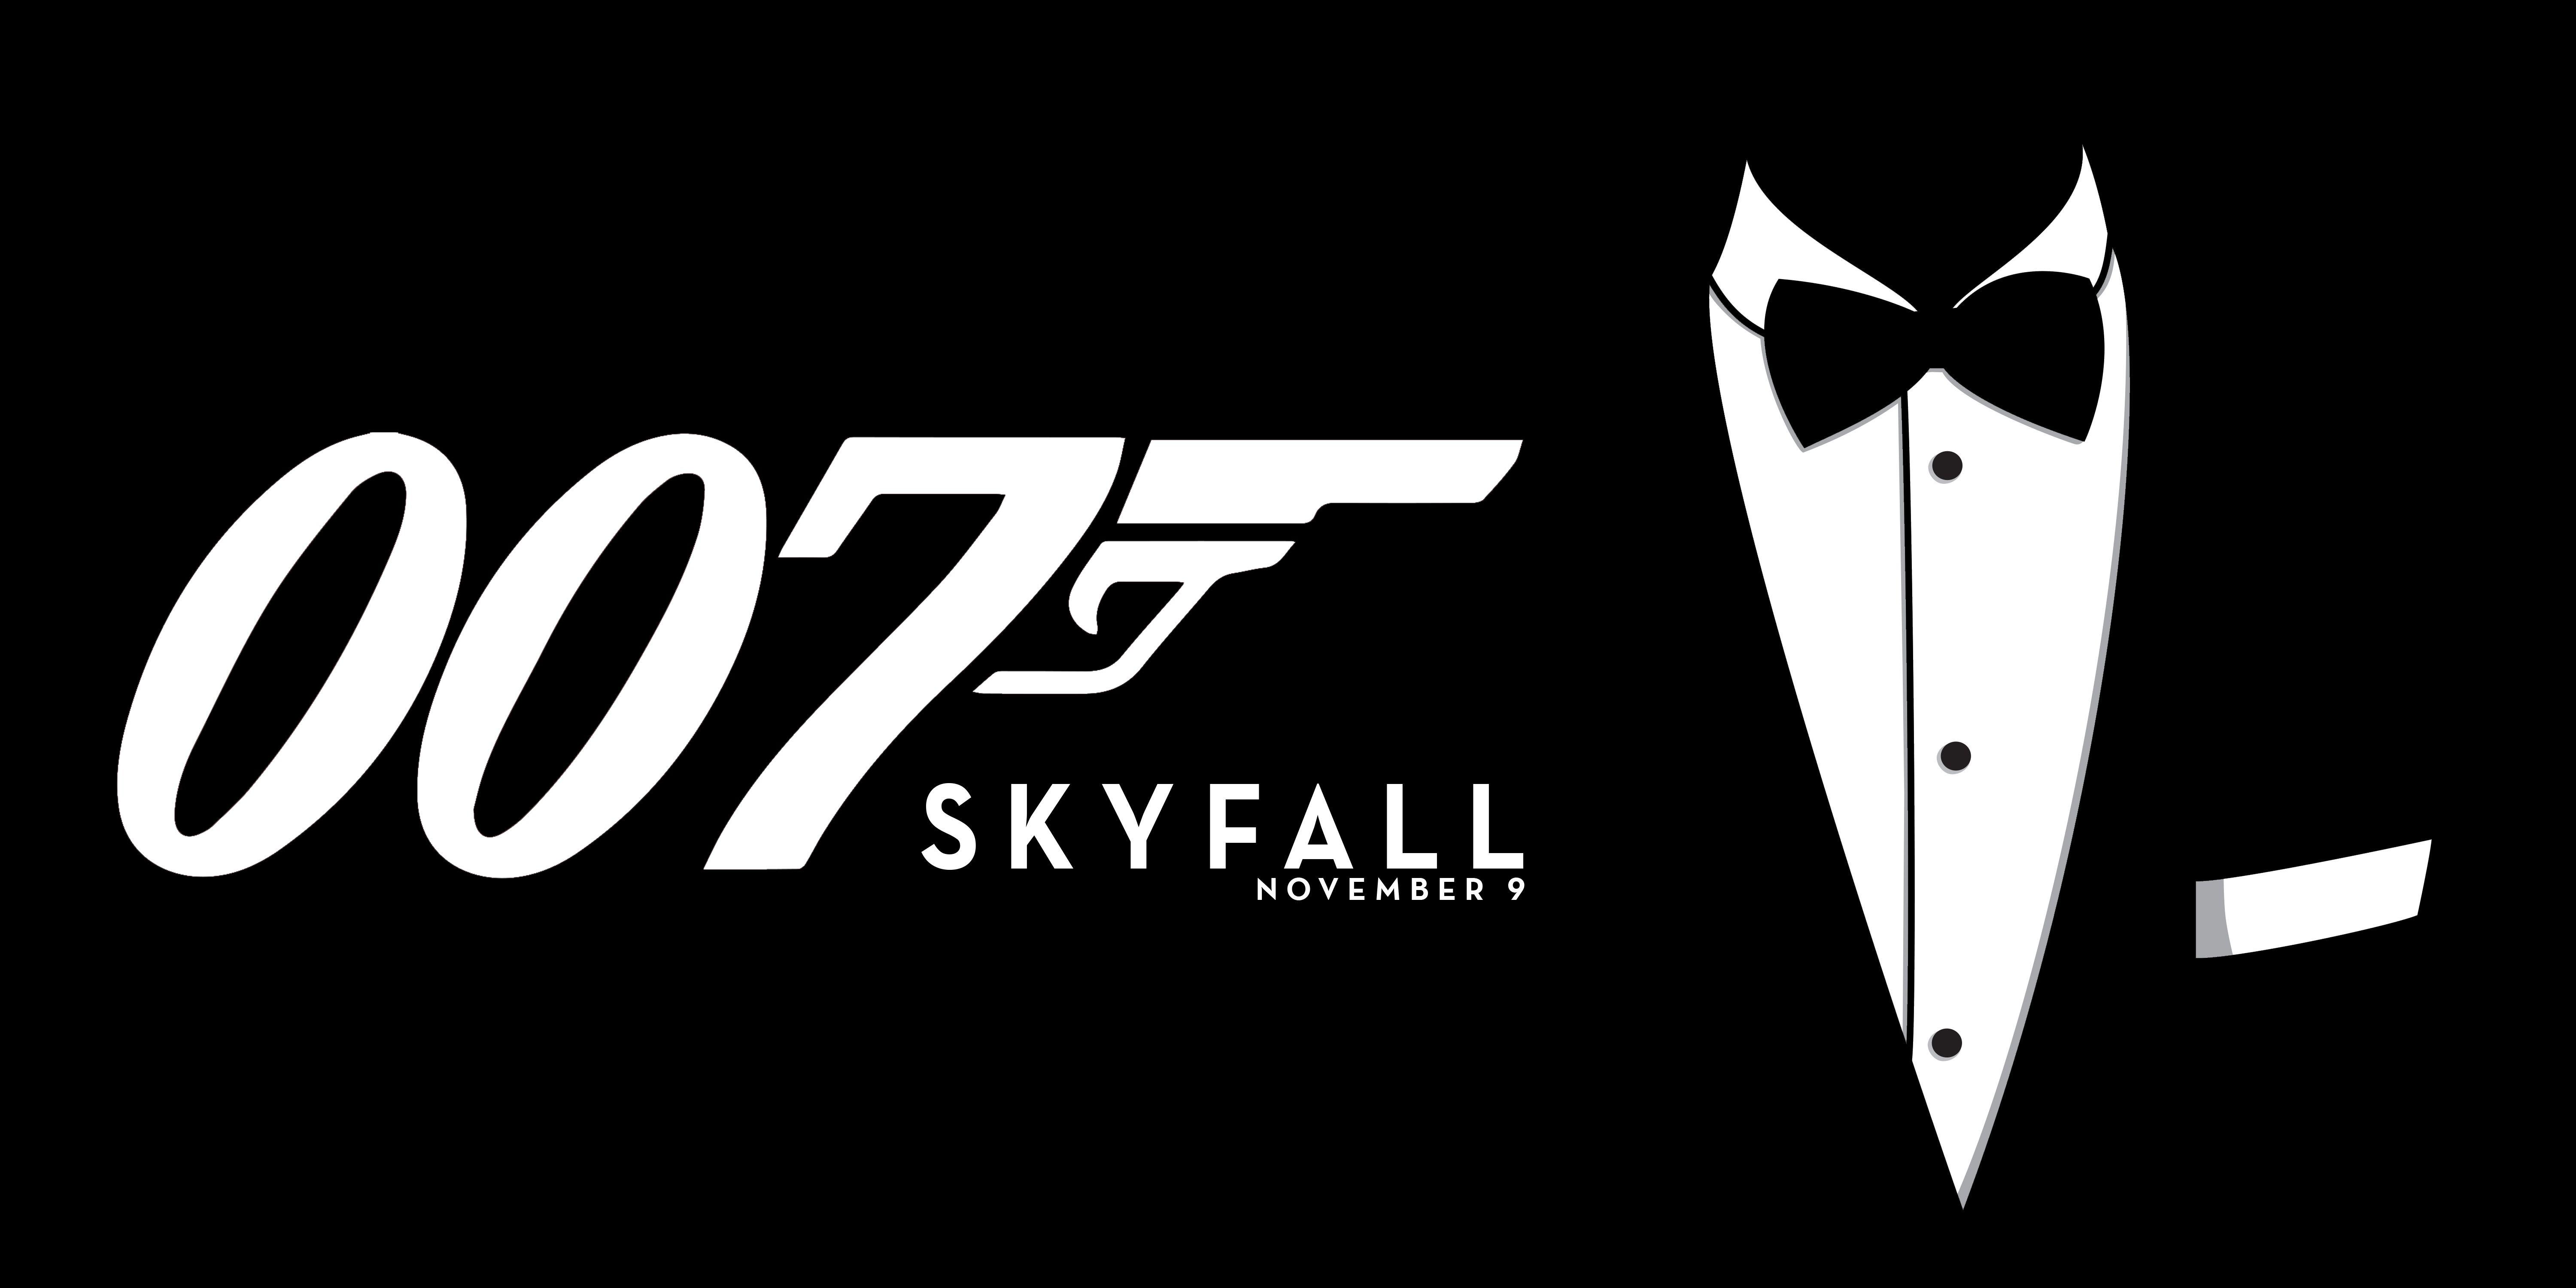 James Bond: Skyfall Movie Poster